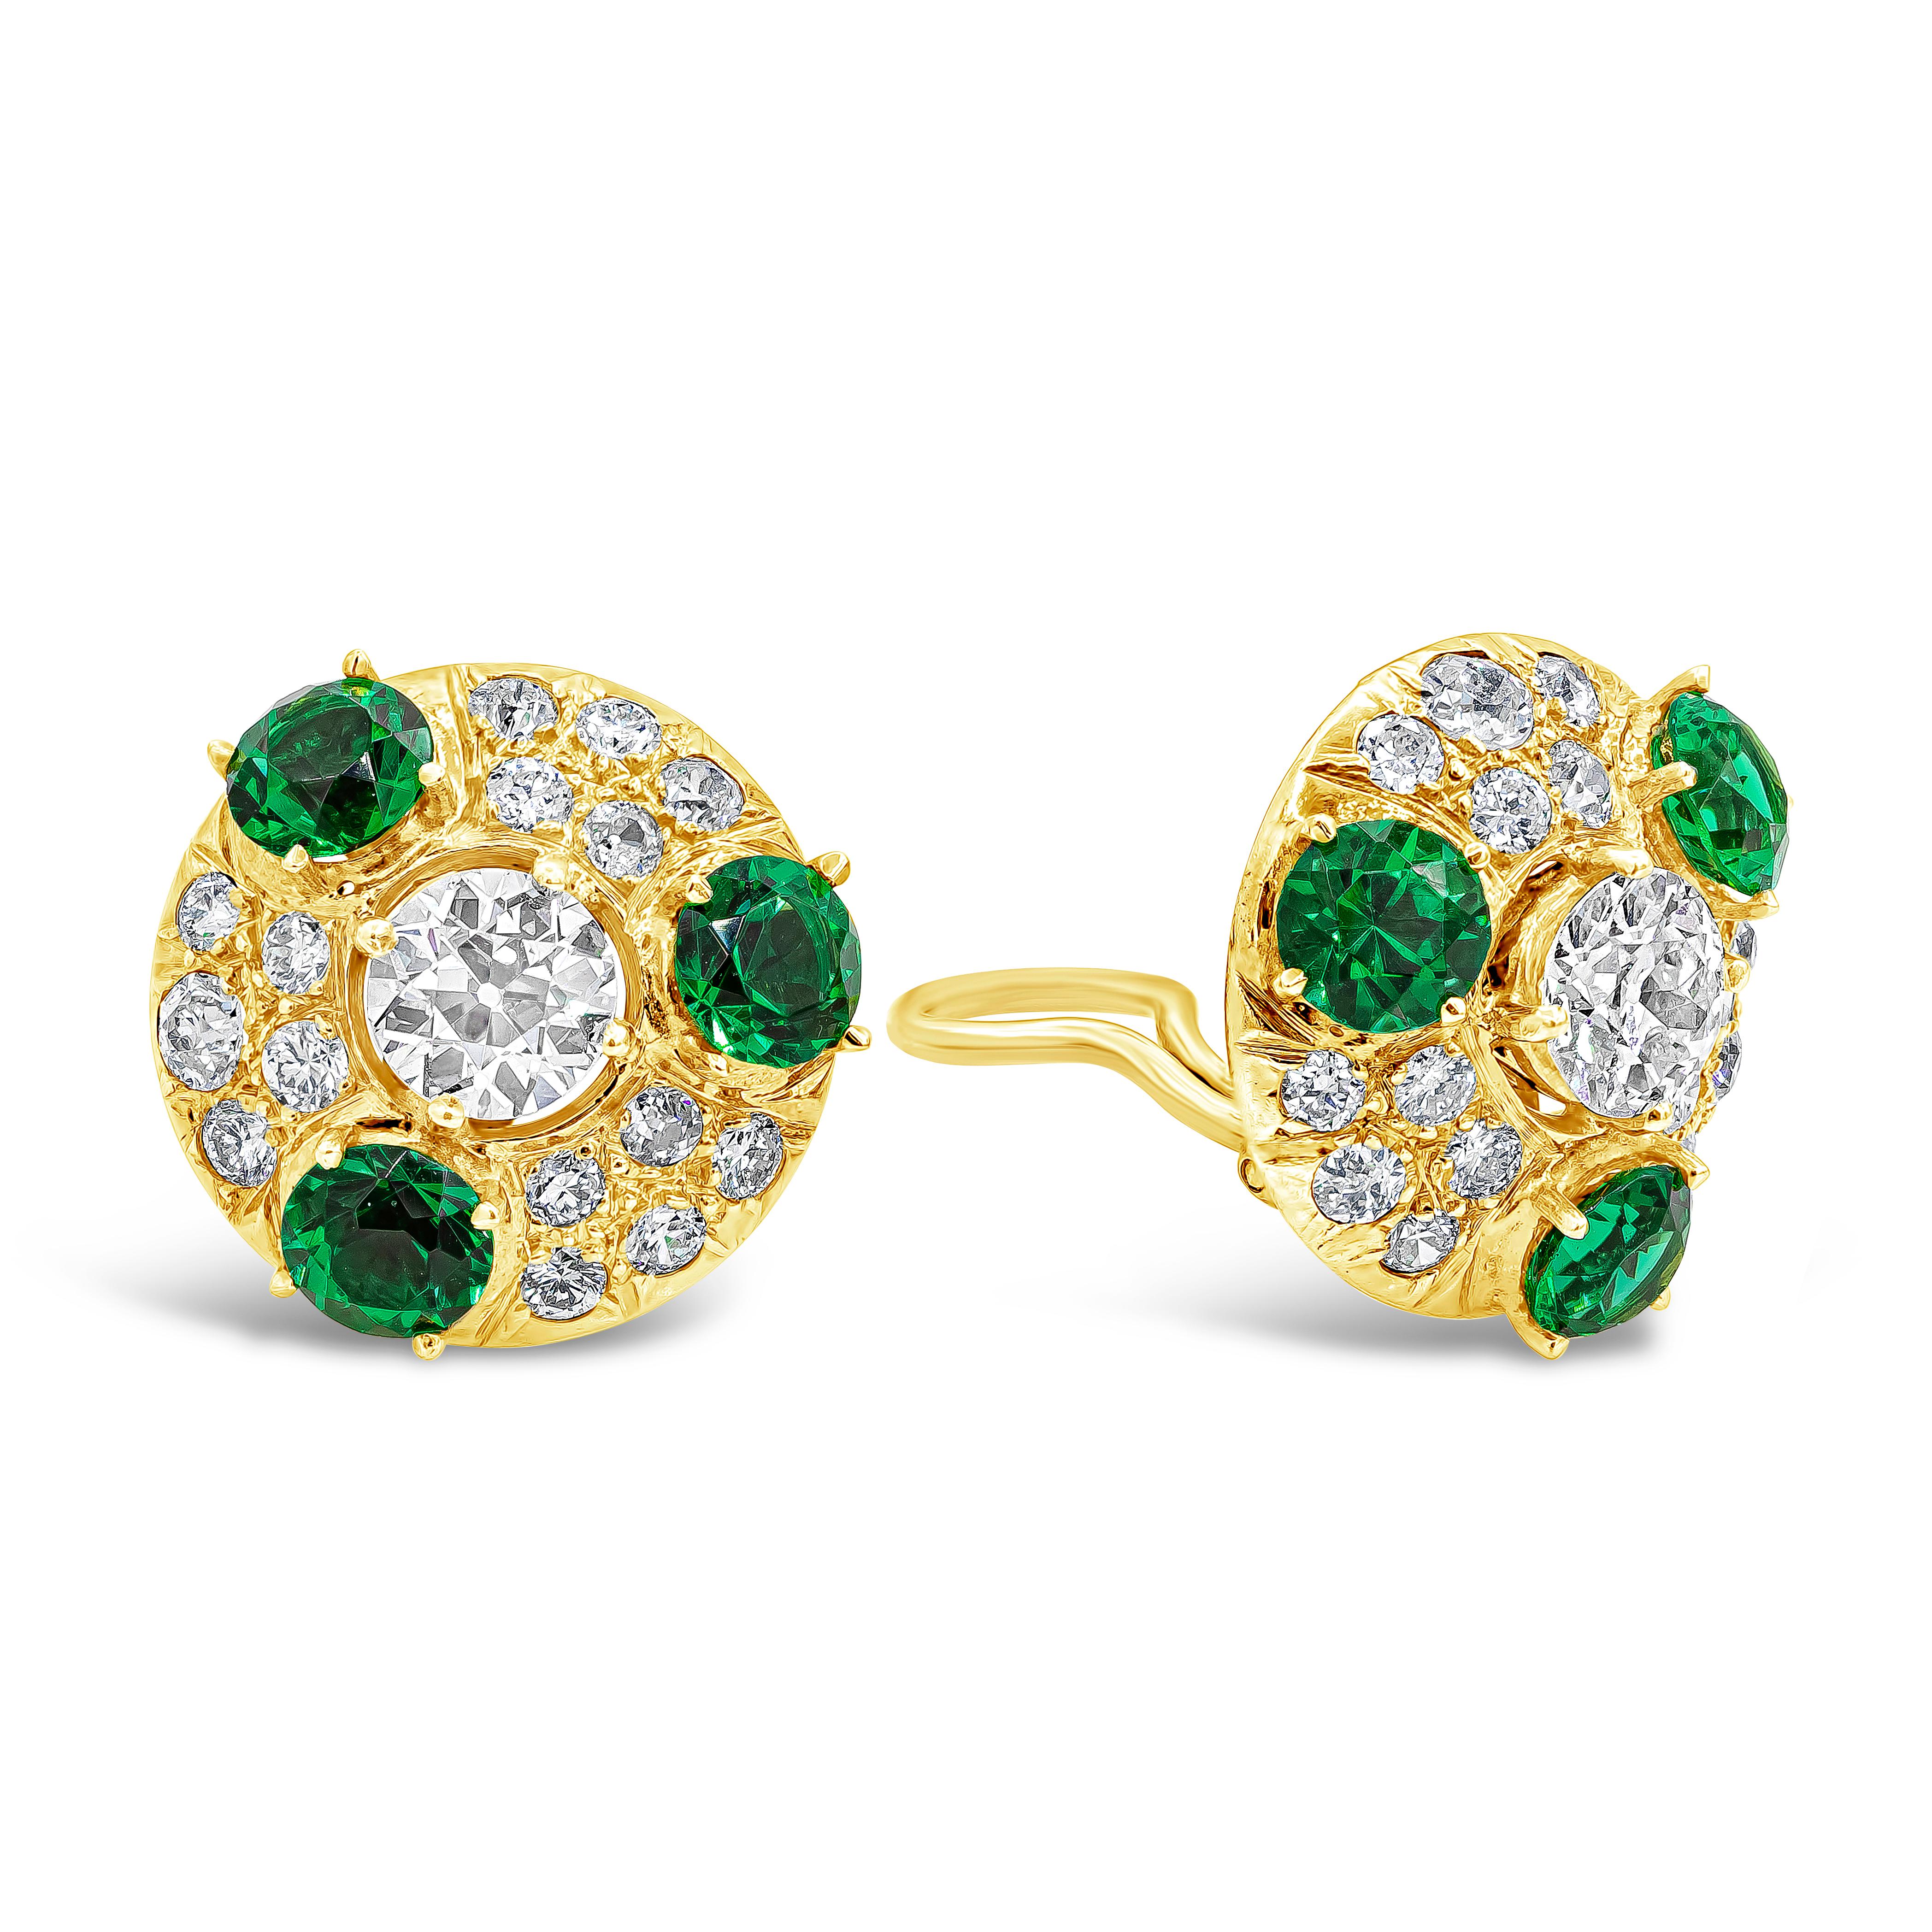 Dieser schlichte, aber elegante Clip-Ohrring präsentiert zwei alt-europäisch geschliffene Mittelsteine von insgesamt 1,80 Karat. Akzentuiert durch kleinere alteuropäische Diamanten und drei imitierte grüne Smaragde. Die Akzentdiamanten wiegen